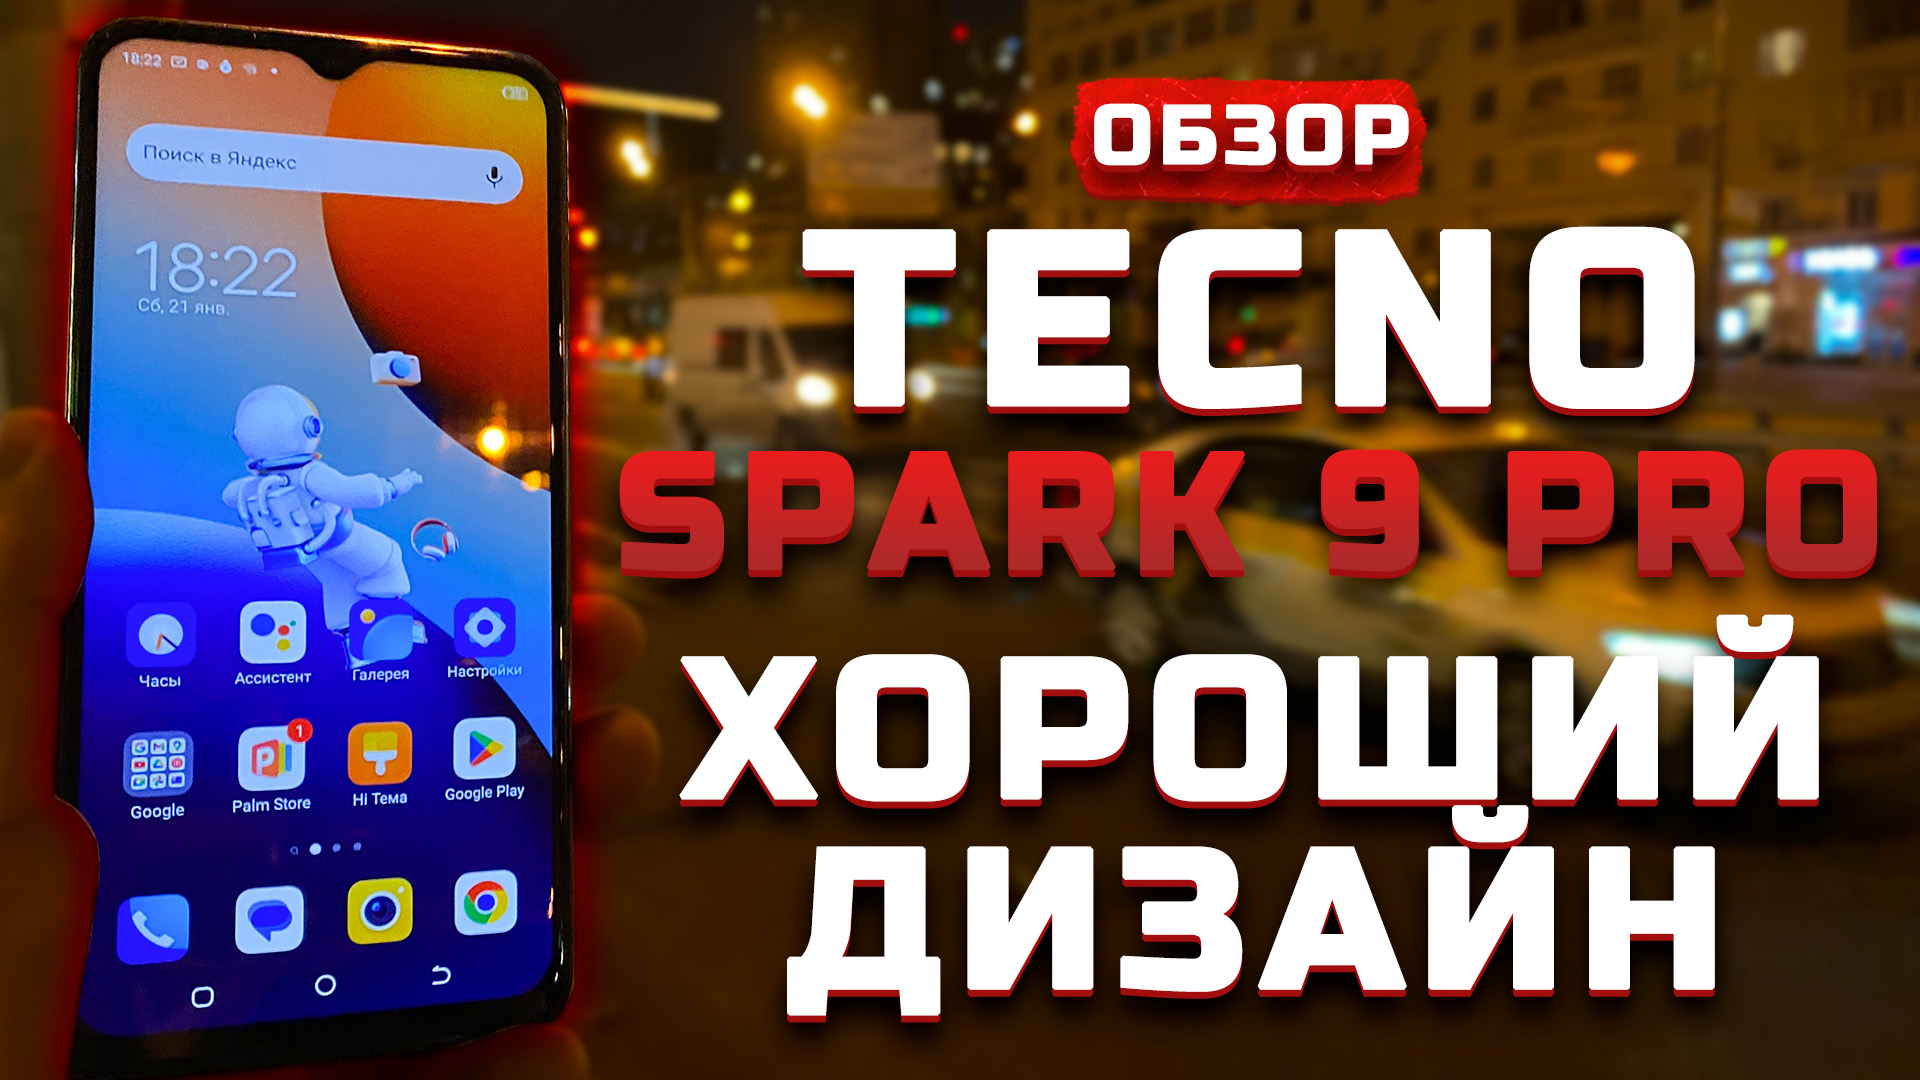 Обзор Tecno Spark 9 Pro | Тест телефона в 10 играх ► Хороший дизайн! [Pleer.ru]